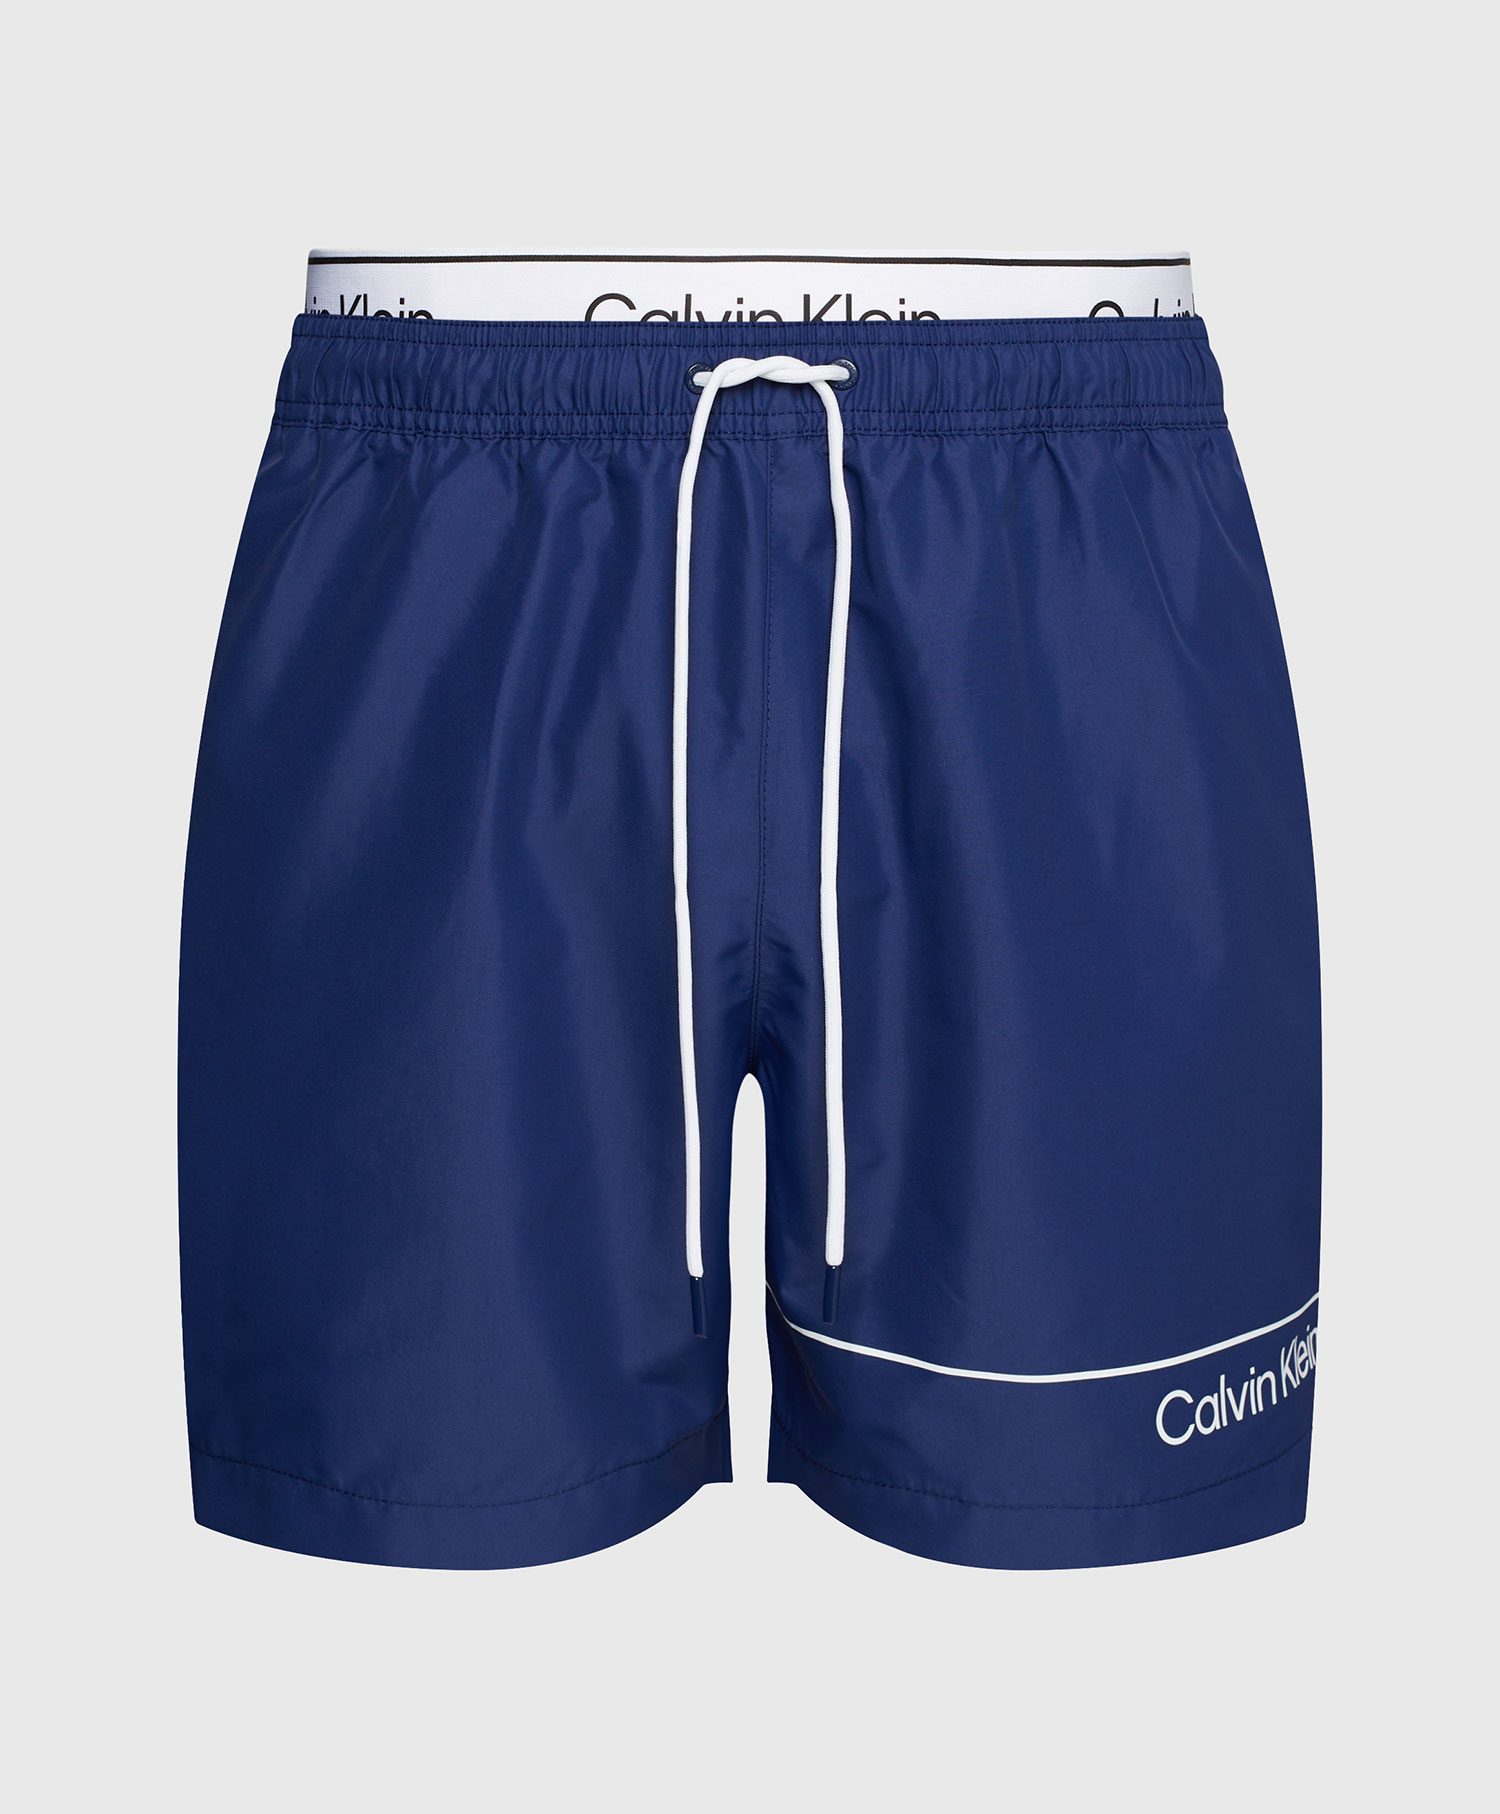 Calvin Klein Shorts Medium Double